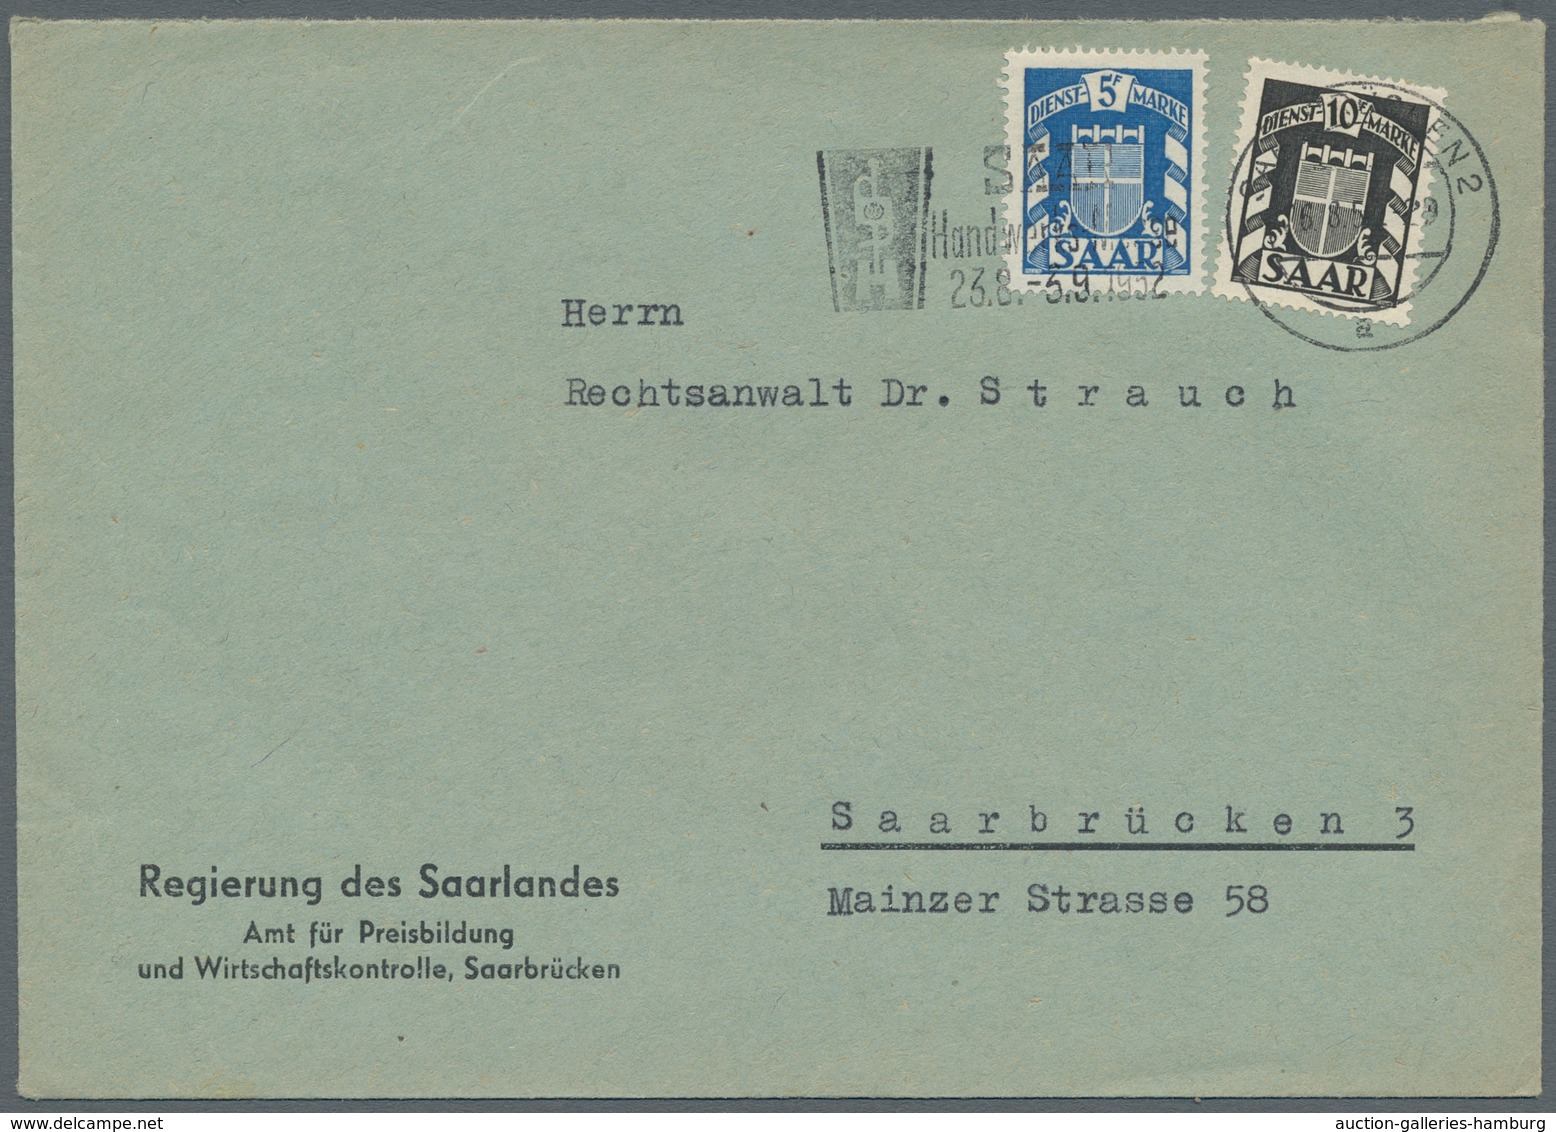 Saarland (1947/56) - Dienstmarken: 1950-51 (ca.), neun Belege, meist 20+50Fr frankiert, alle mit Mas